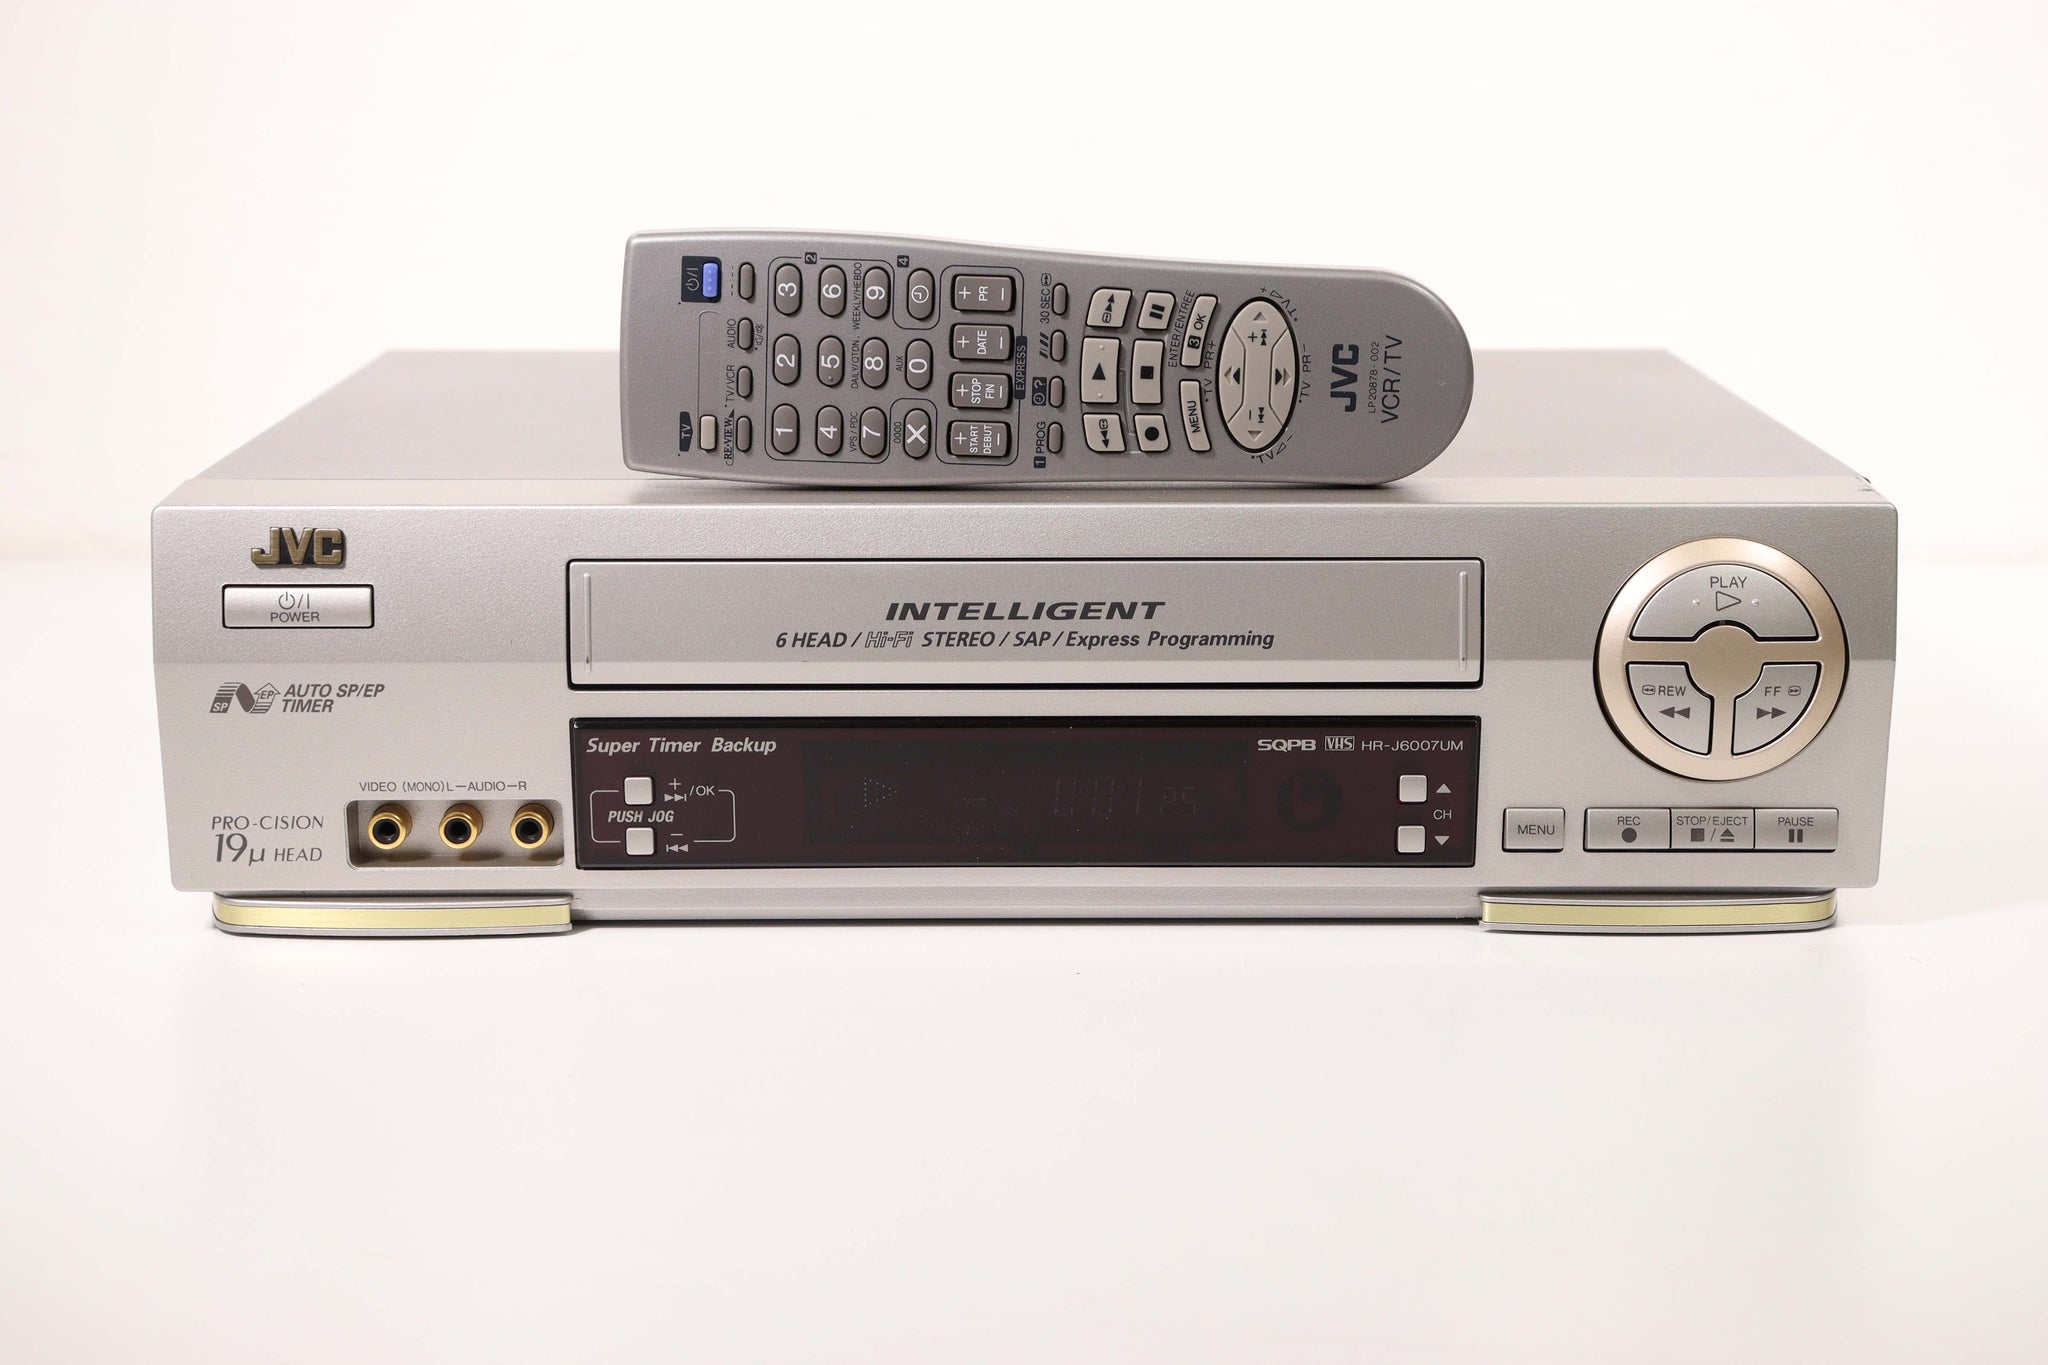 Bangladesh herder breedtegraad JVC HR-J6007UM Video Cassette Recorder VHS Player System Intelligent 6